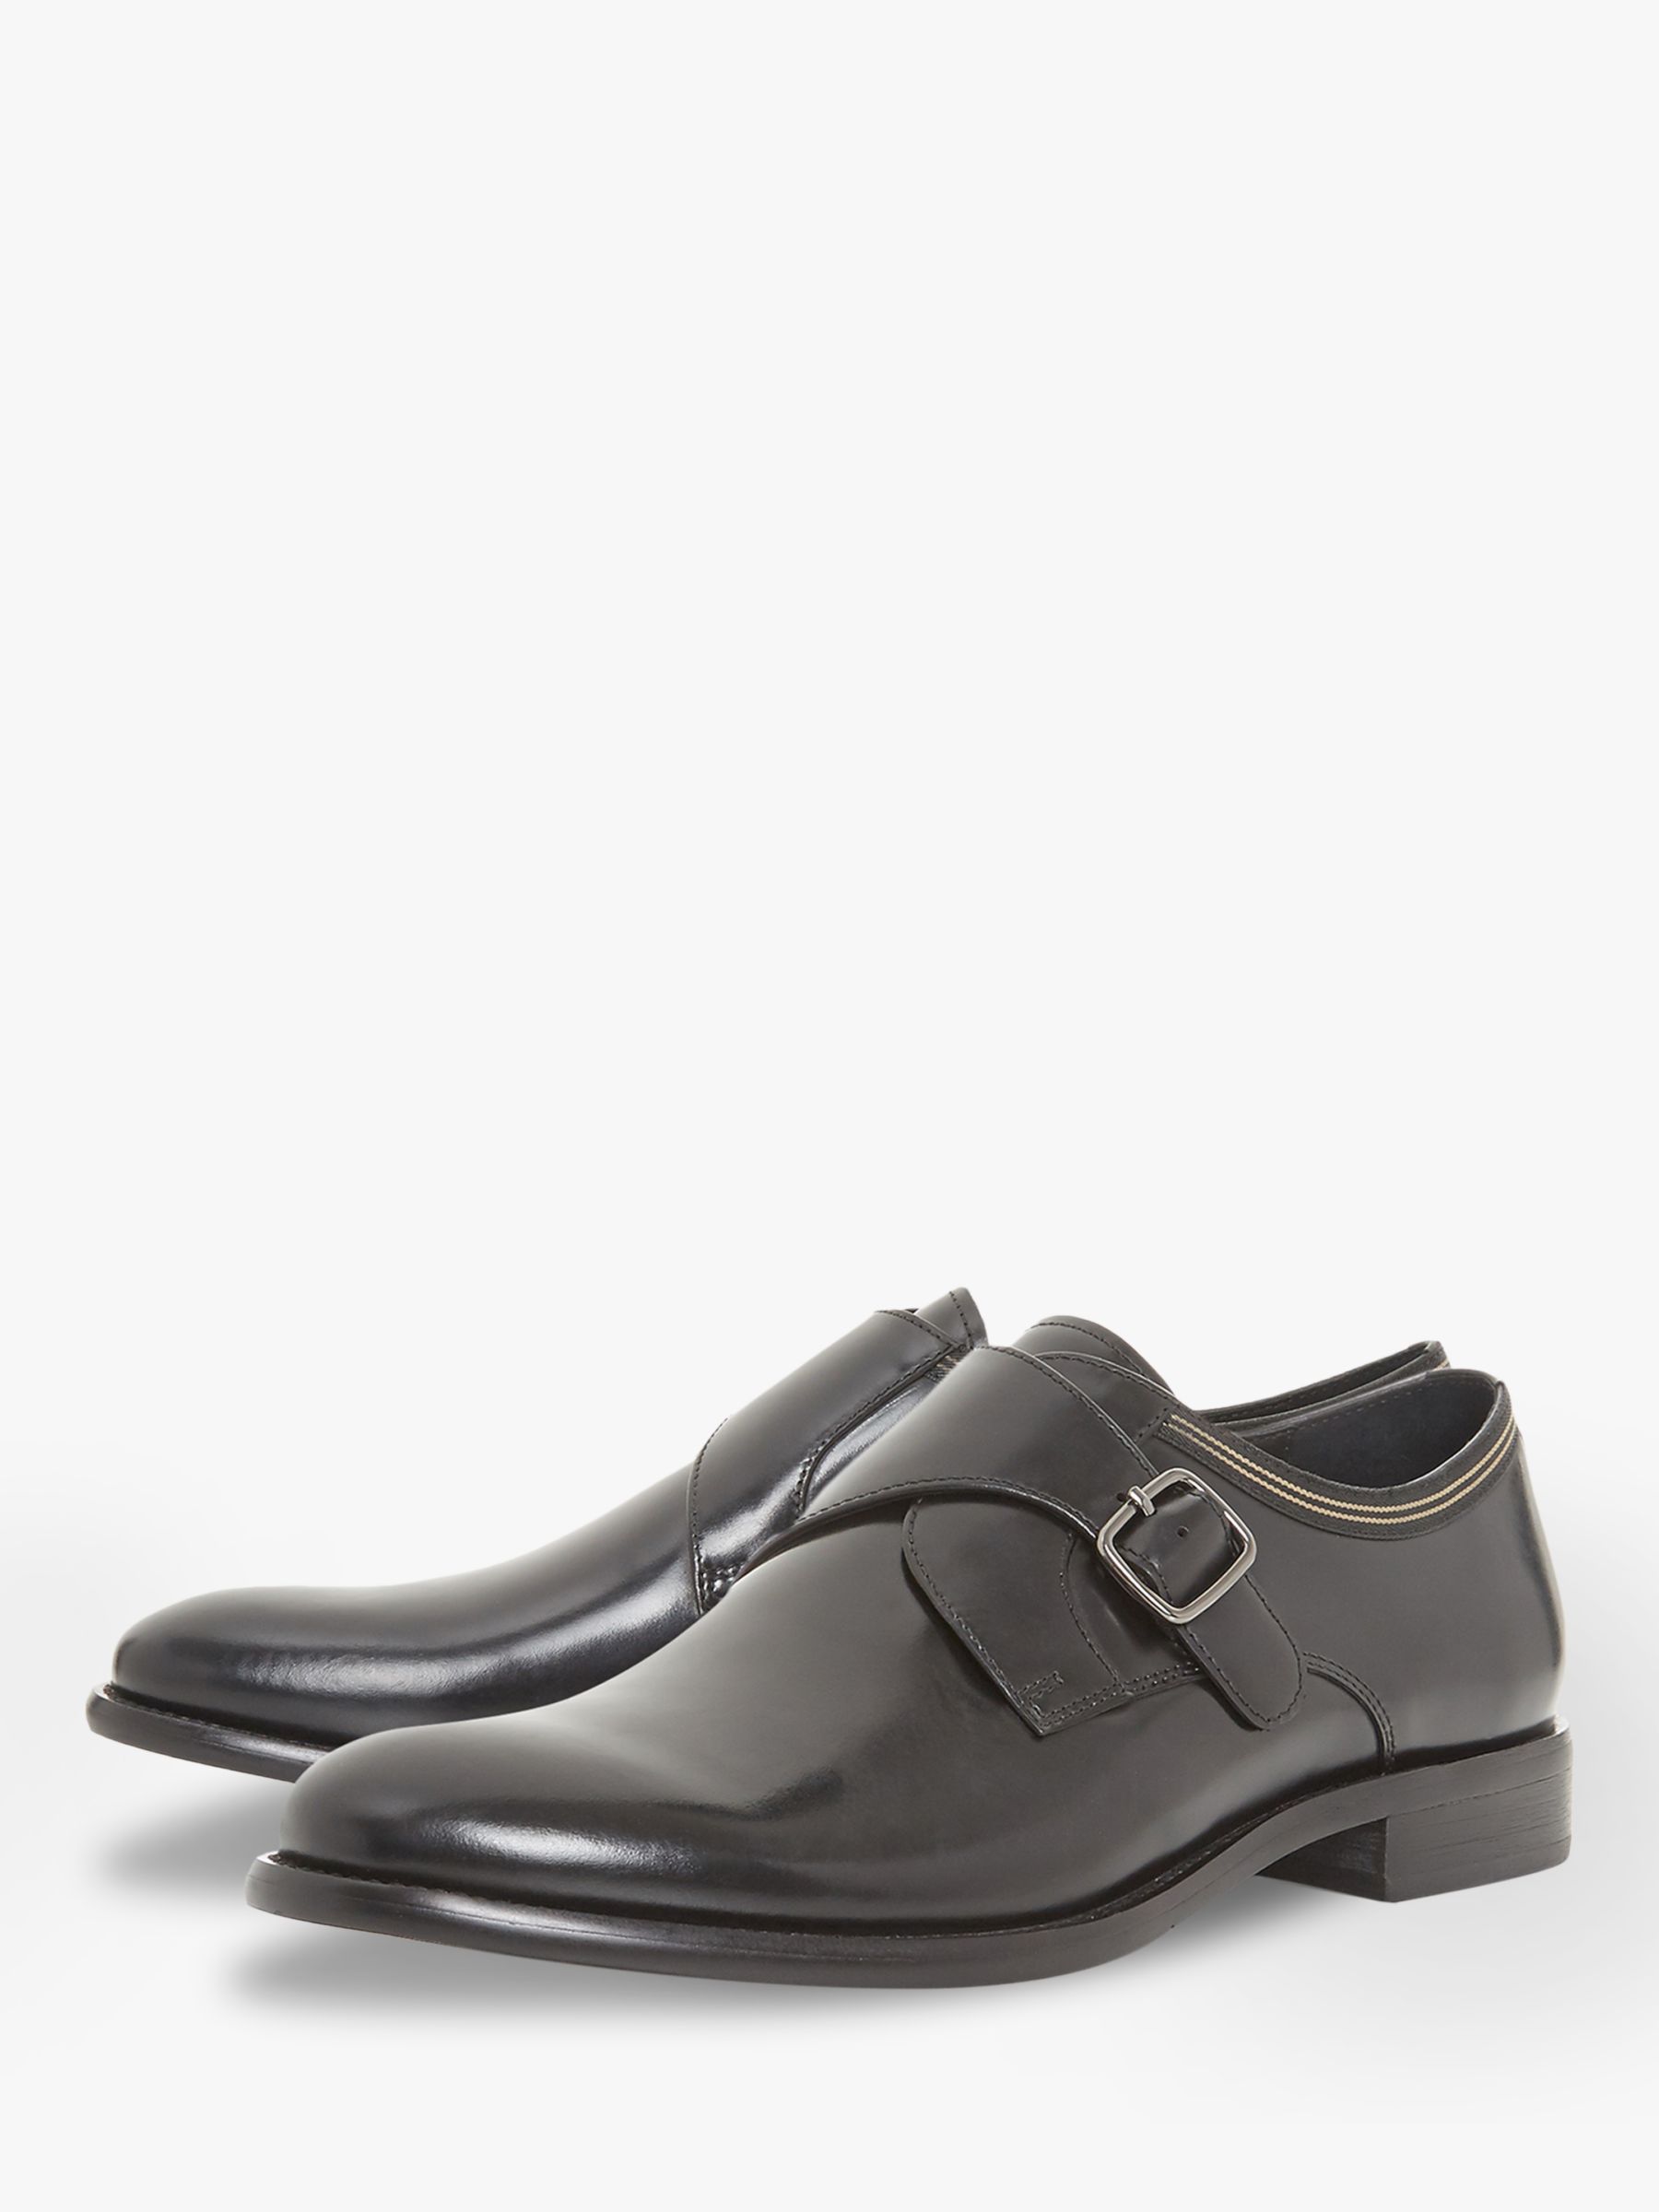 Bertie Pilcrow Monk Strap Shoes, Black